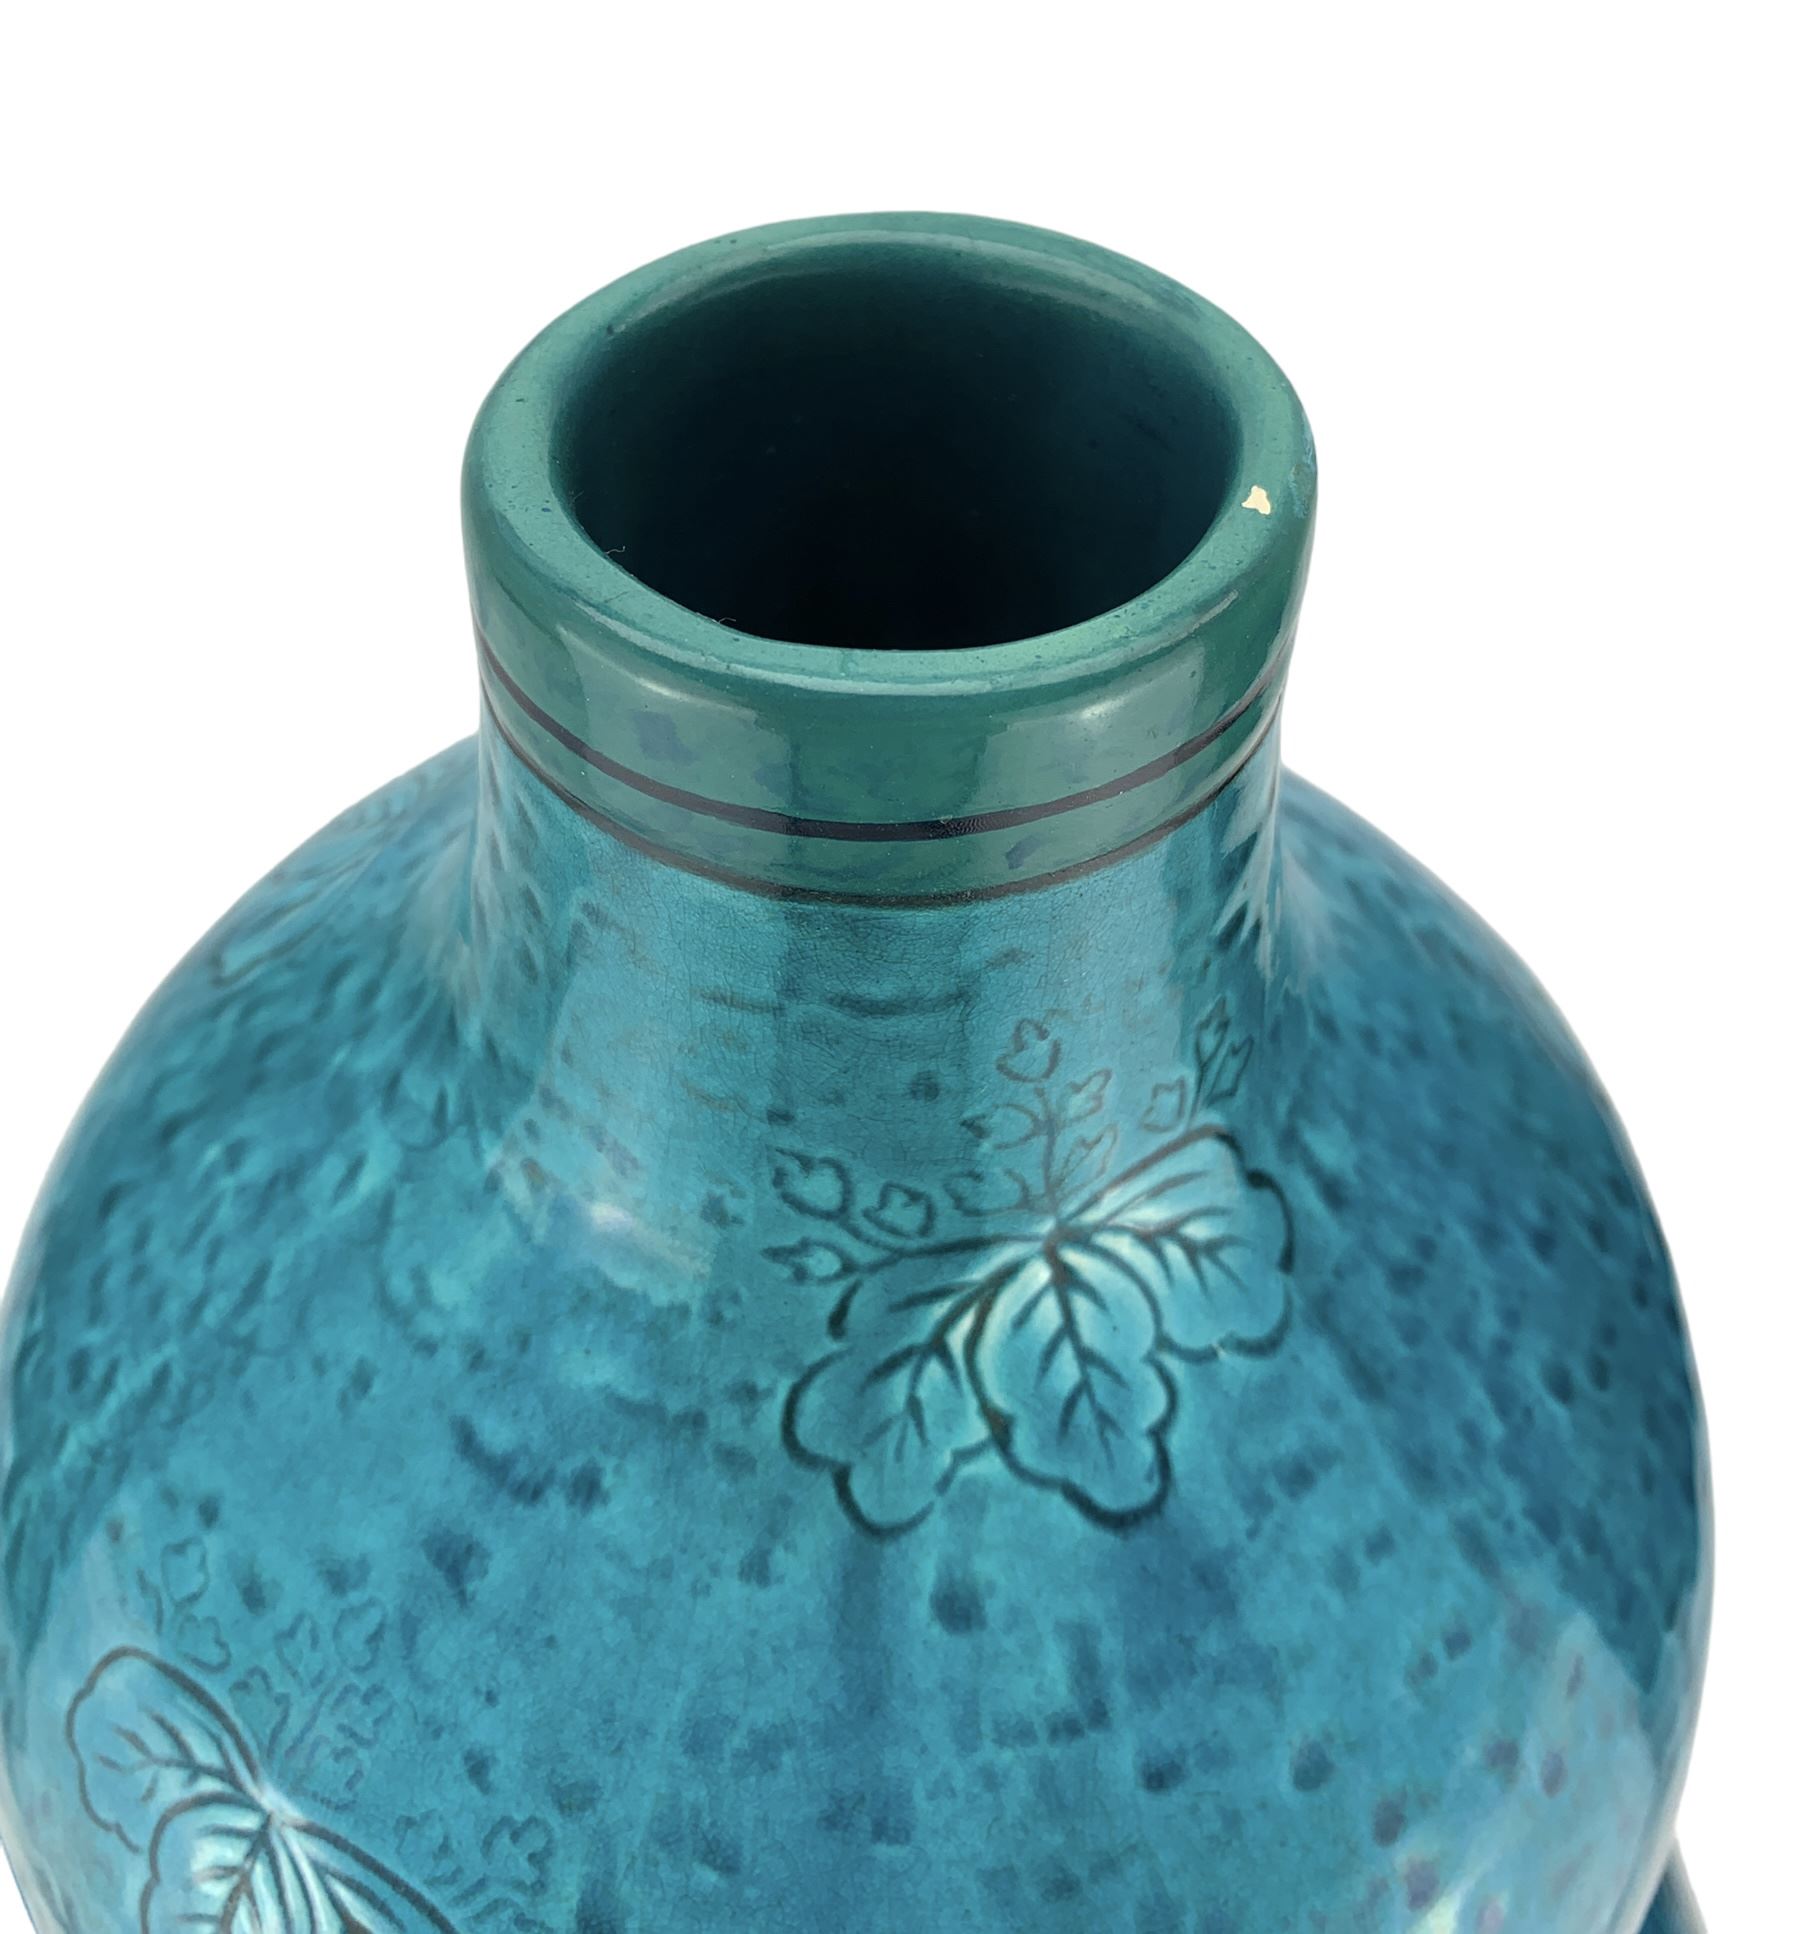 Burmantofts Faience turquoise-glaze vase - Image 3 of 4